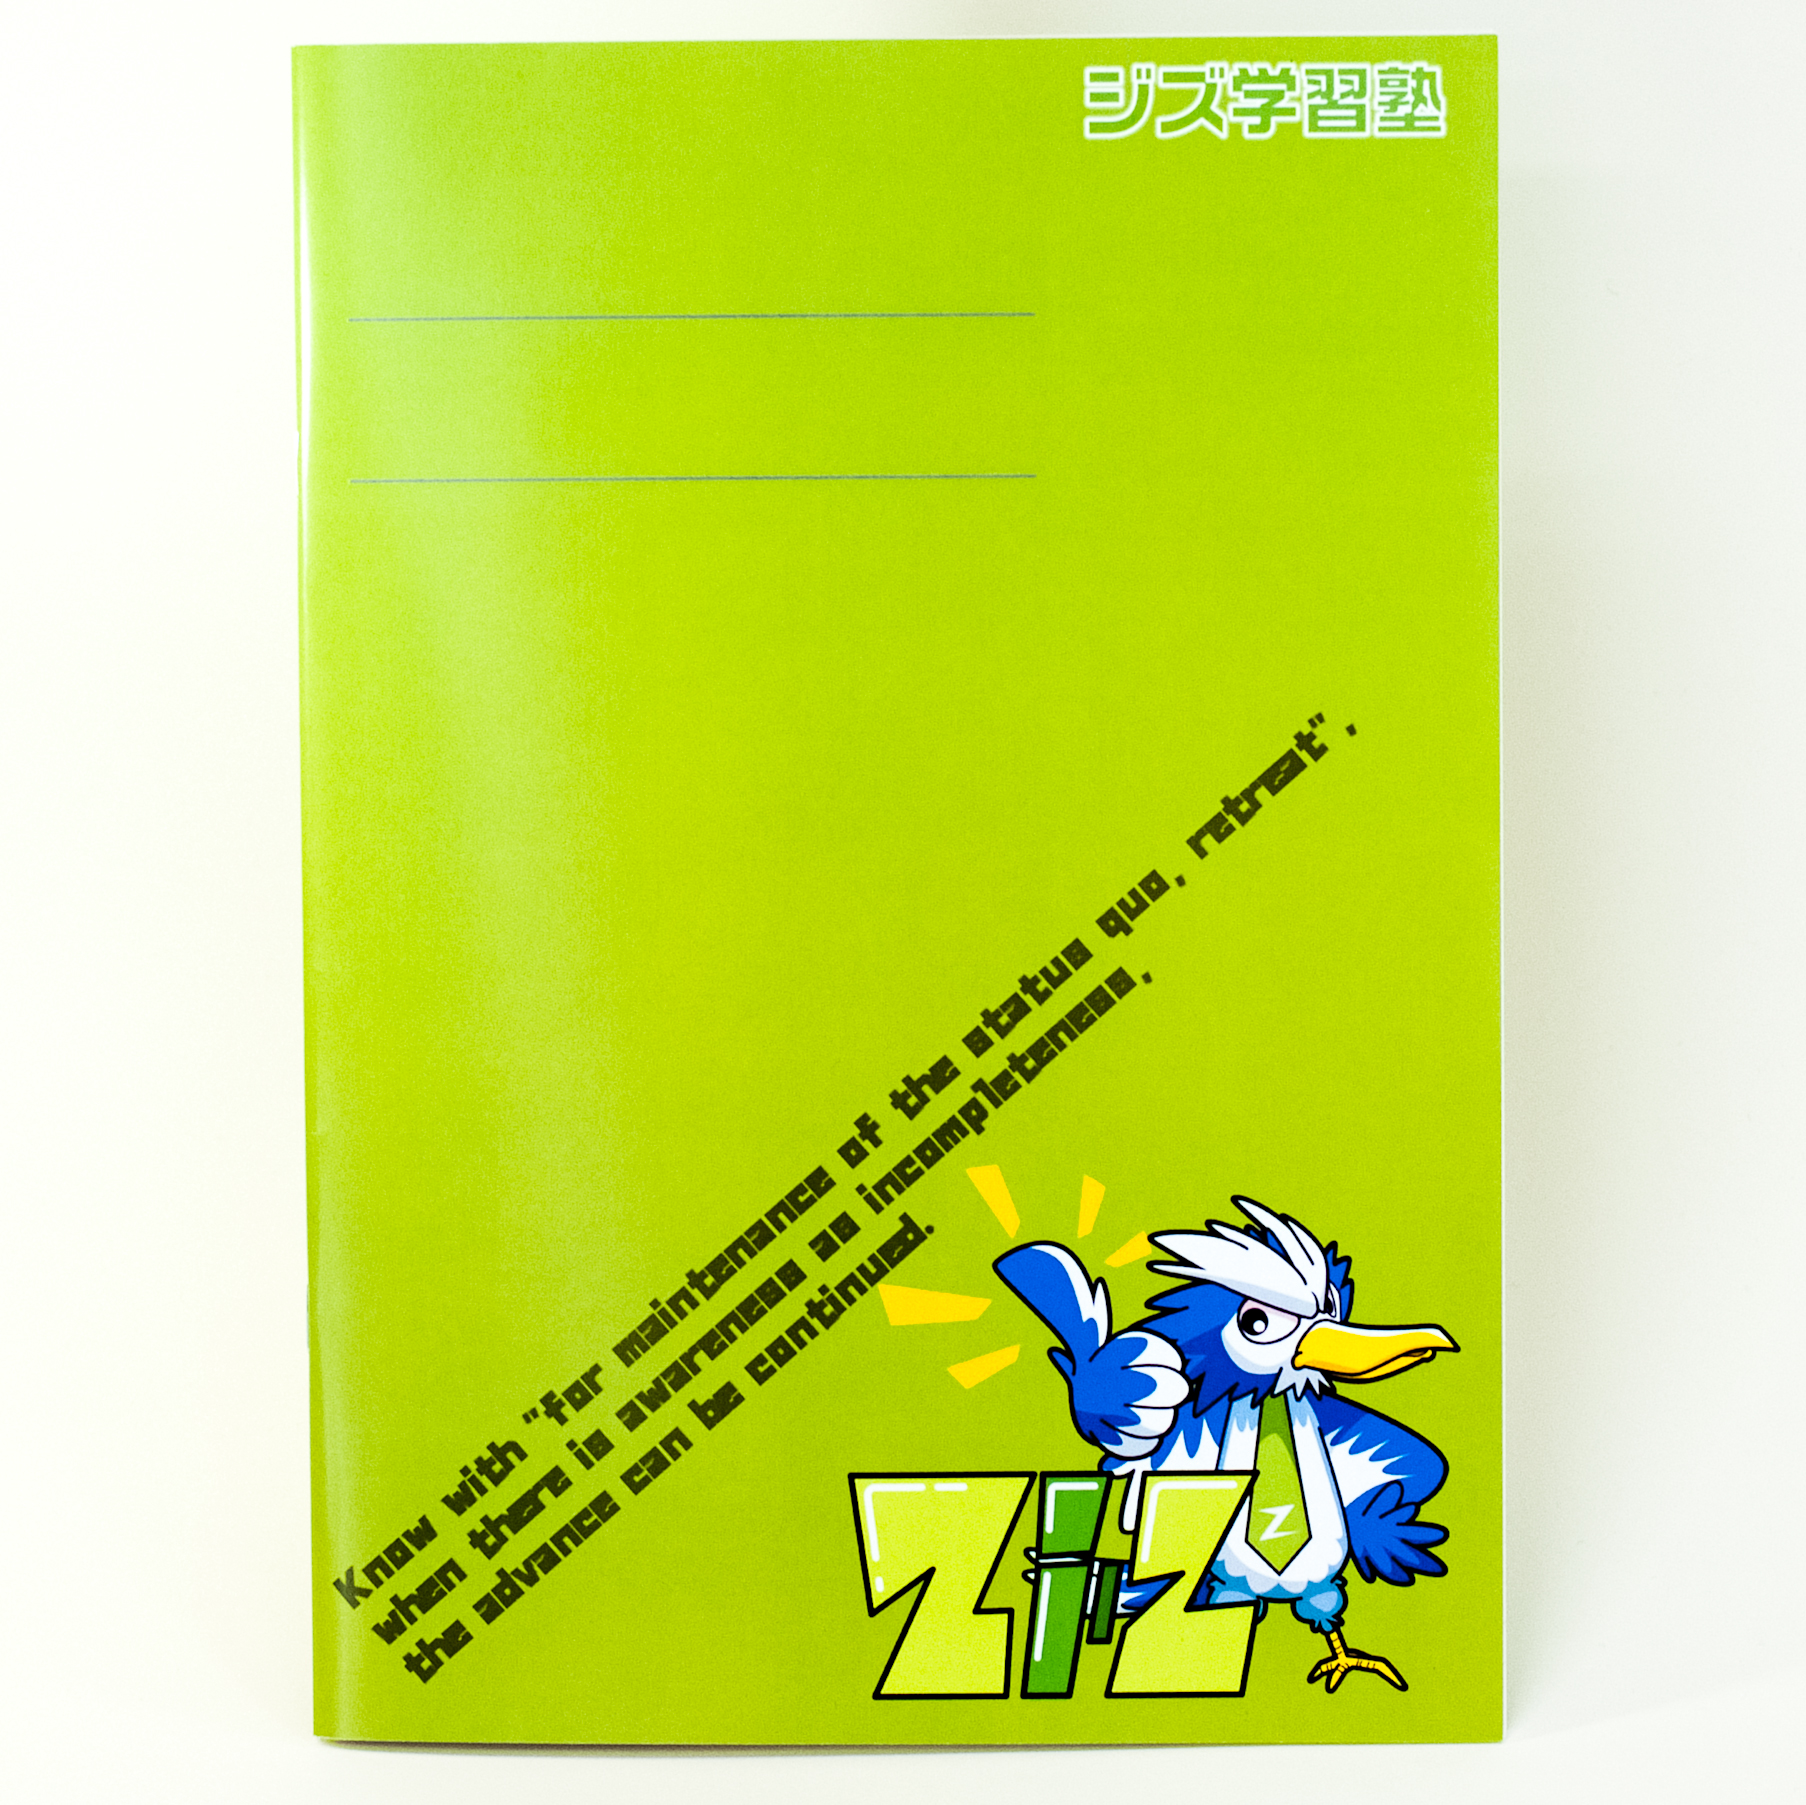 「ジズ学習塾 様」製作のオリジナルノート